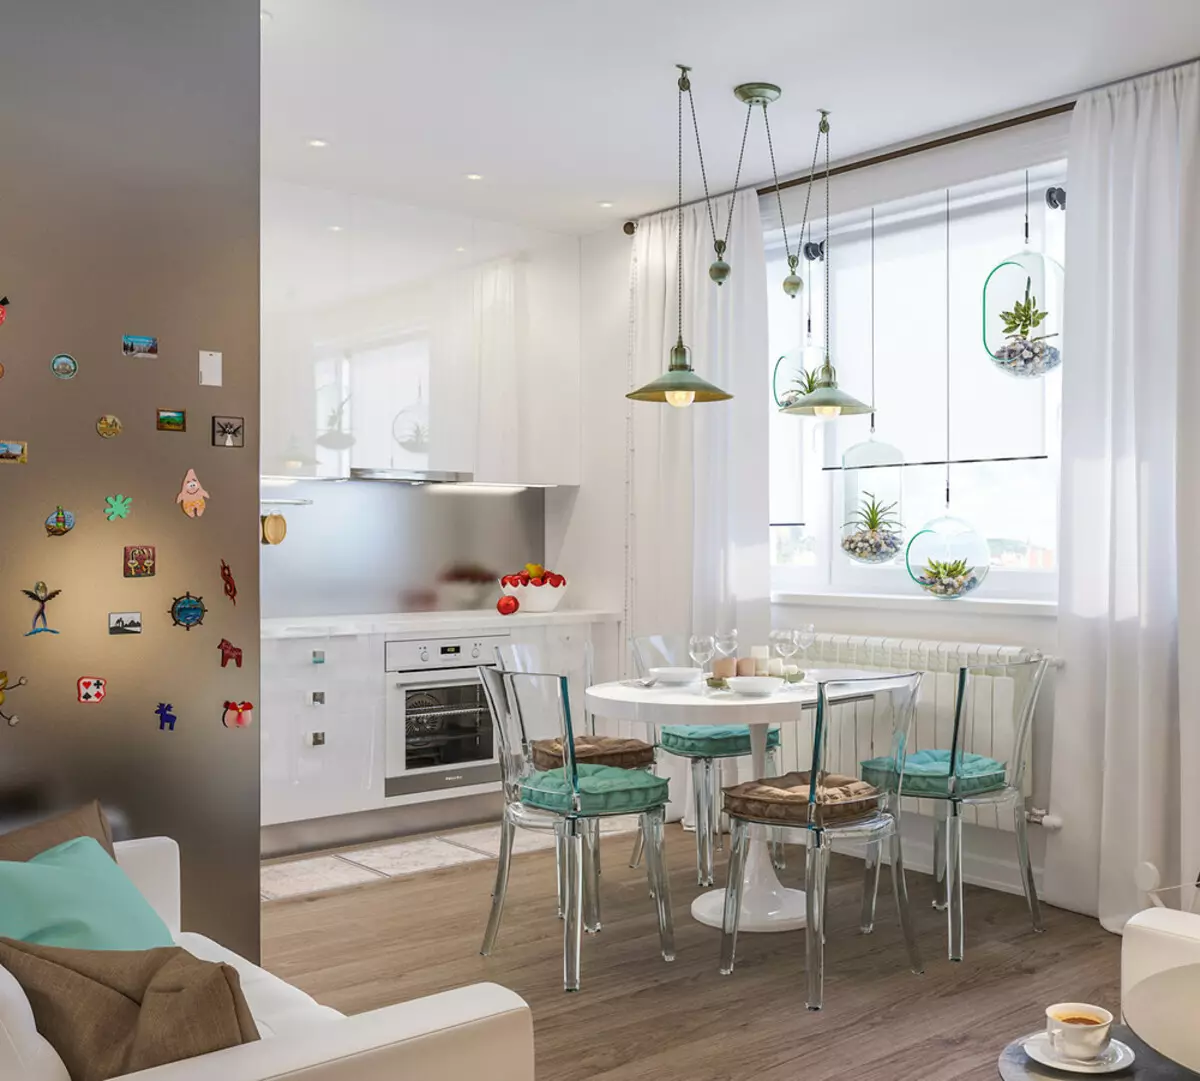 Dizainas Virtuvės svetainė (152 nuotraukos): kombinuotų kambarių interjeras bute, virtuvės projektų pavyzdžiai, derinami su salė, dizaino parinktys 9515_81